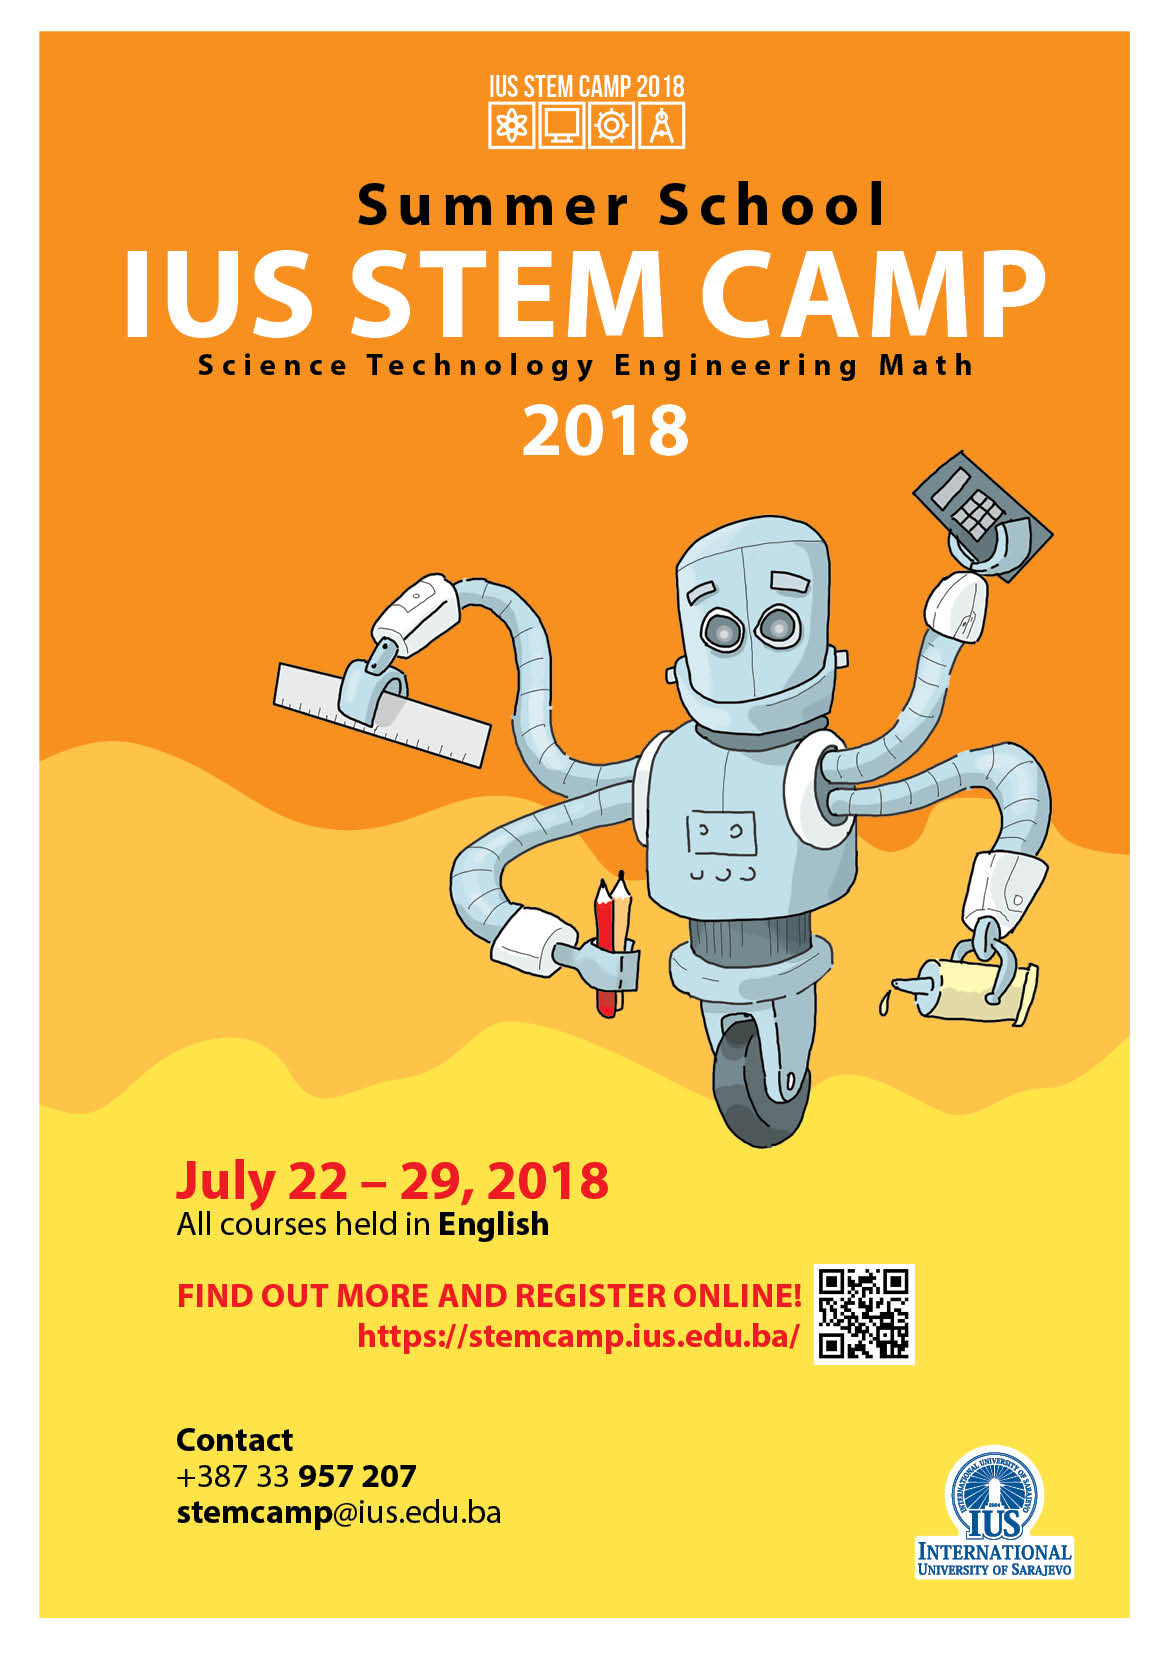  IUS STEM CAMP 2018 